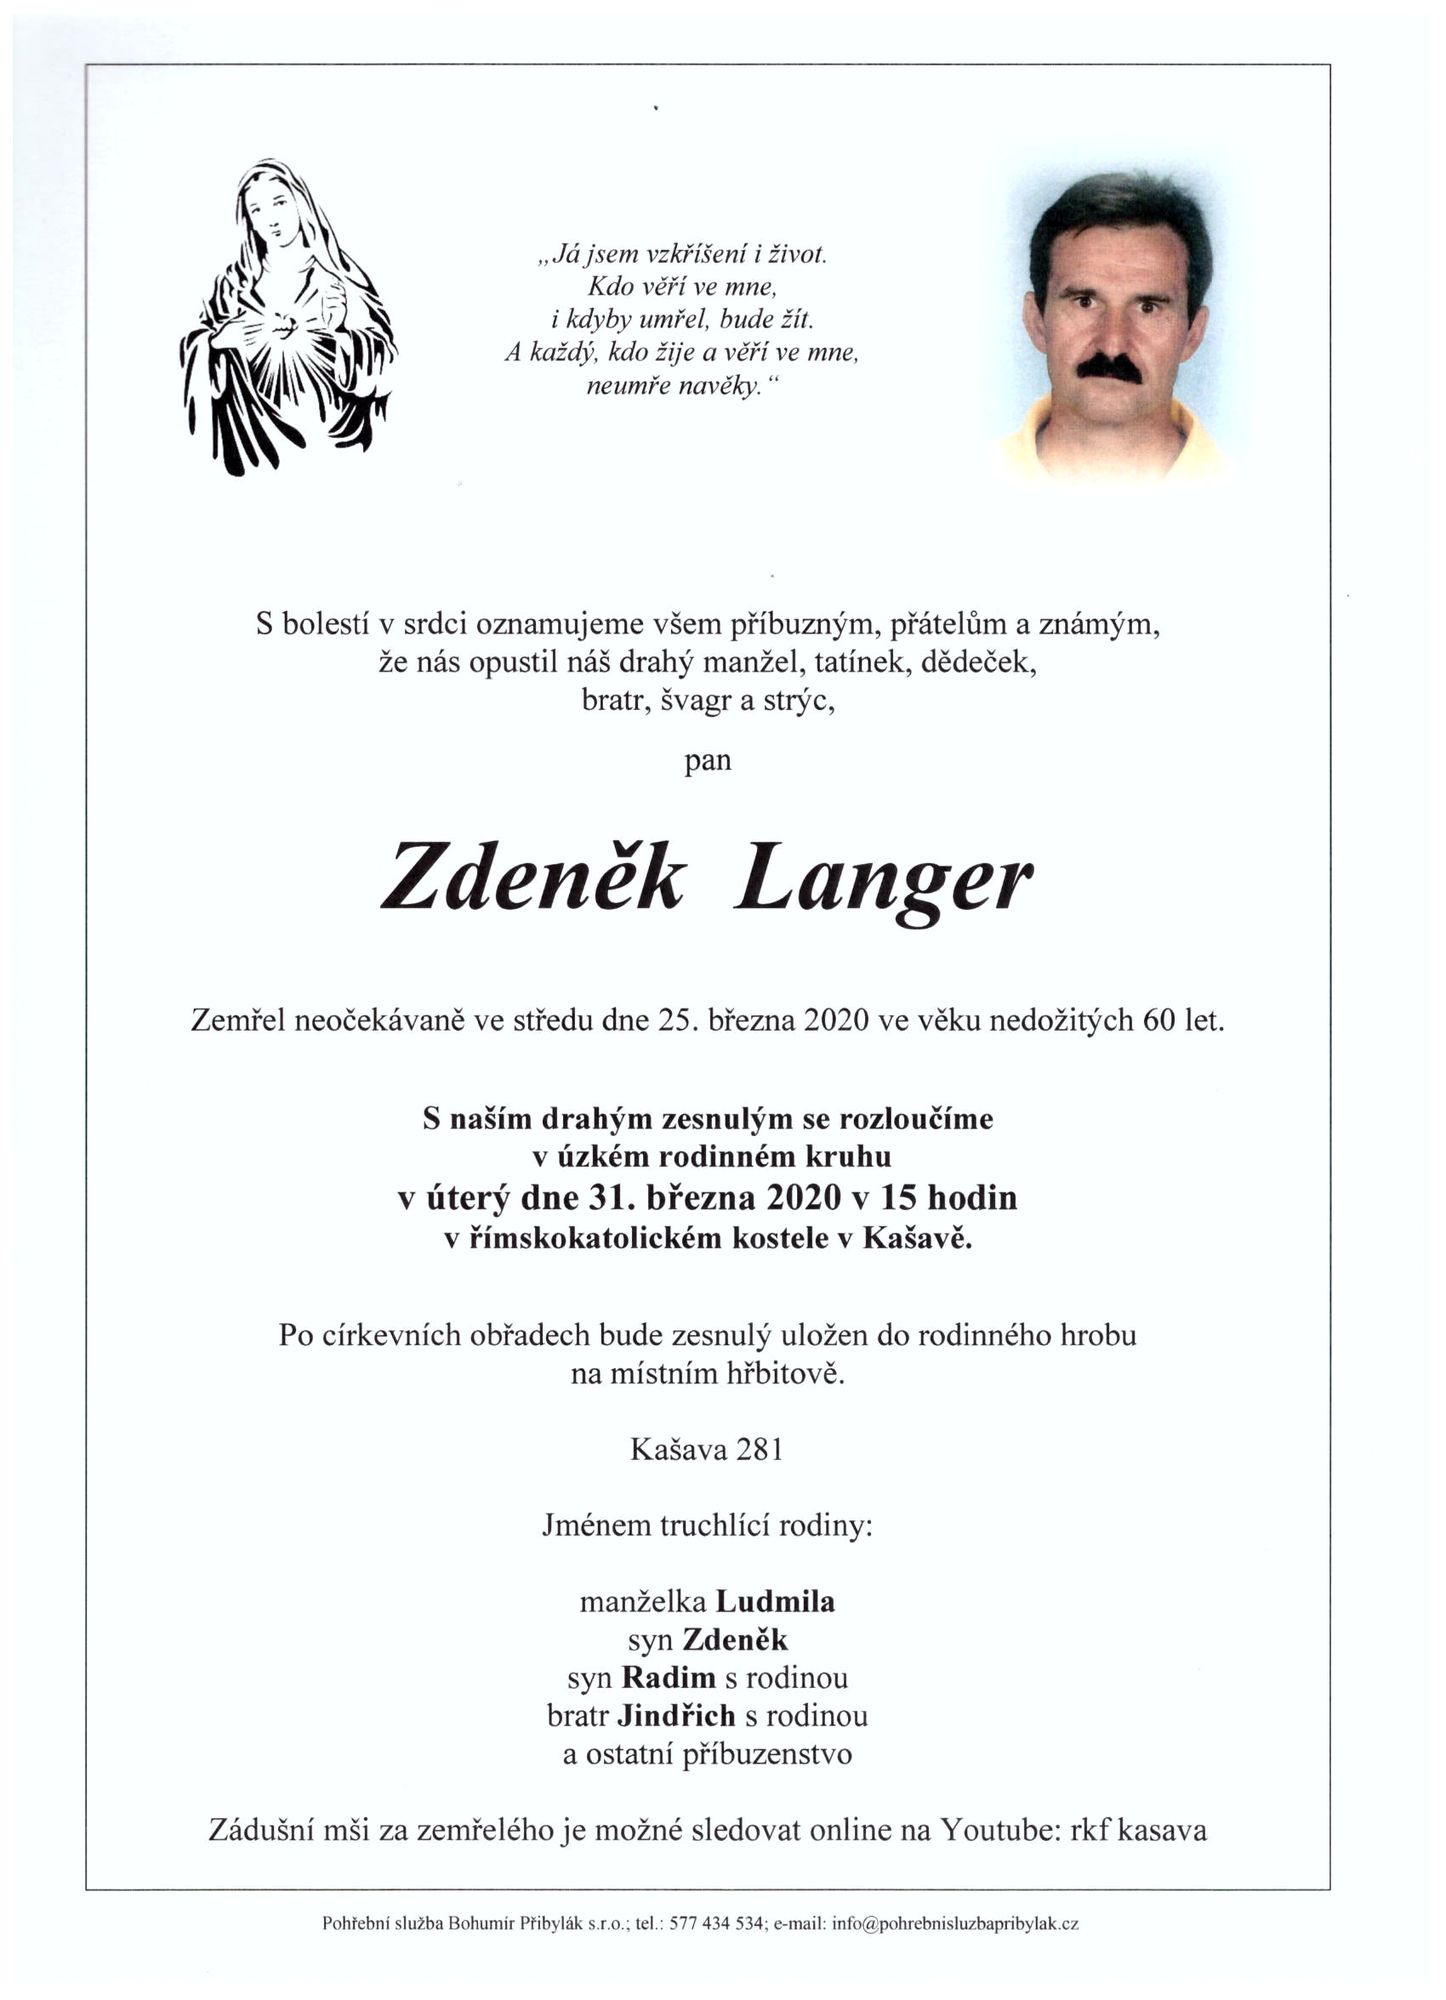 Zdeněk Langer